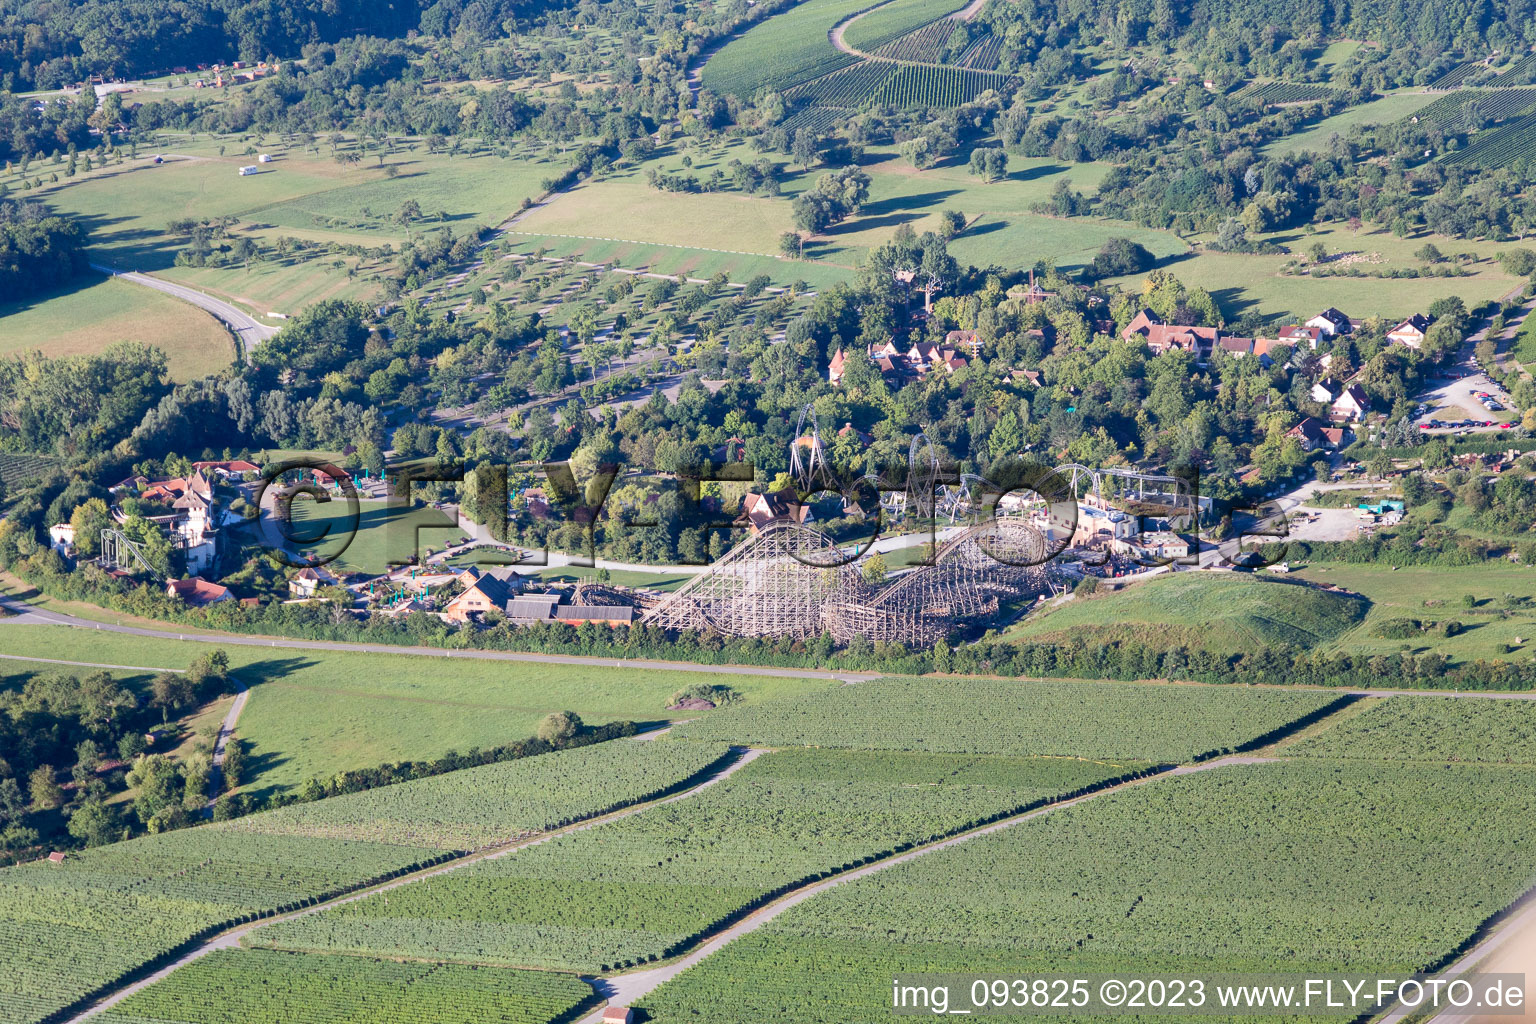 Vue aérienne de Parc aventure Tripsdrill à Cleebronn dans le département Bade-Wurtemberg, Allemagne